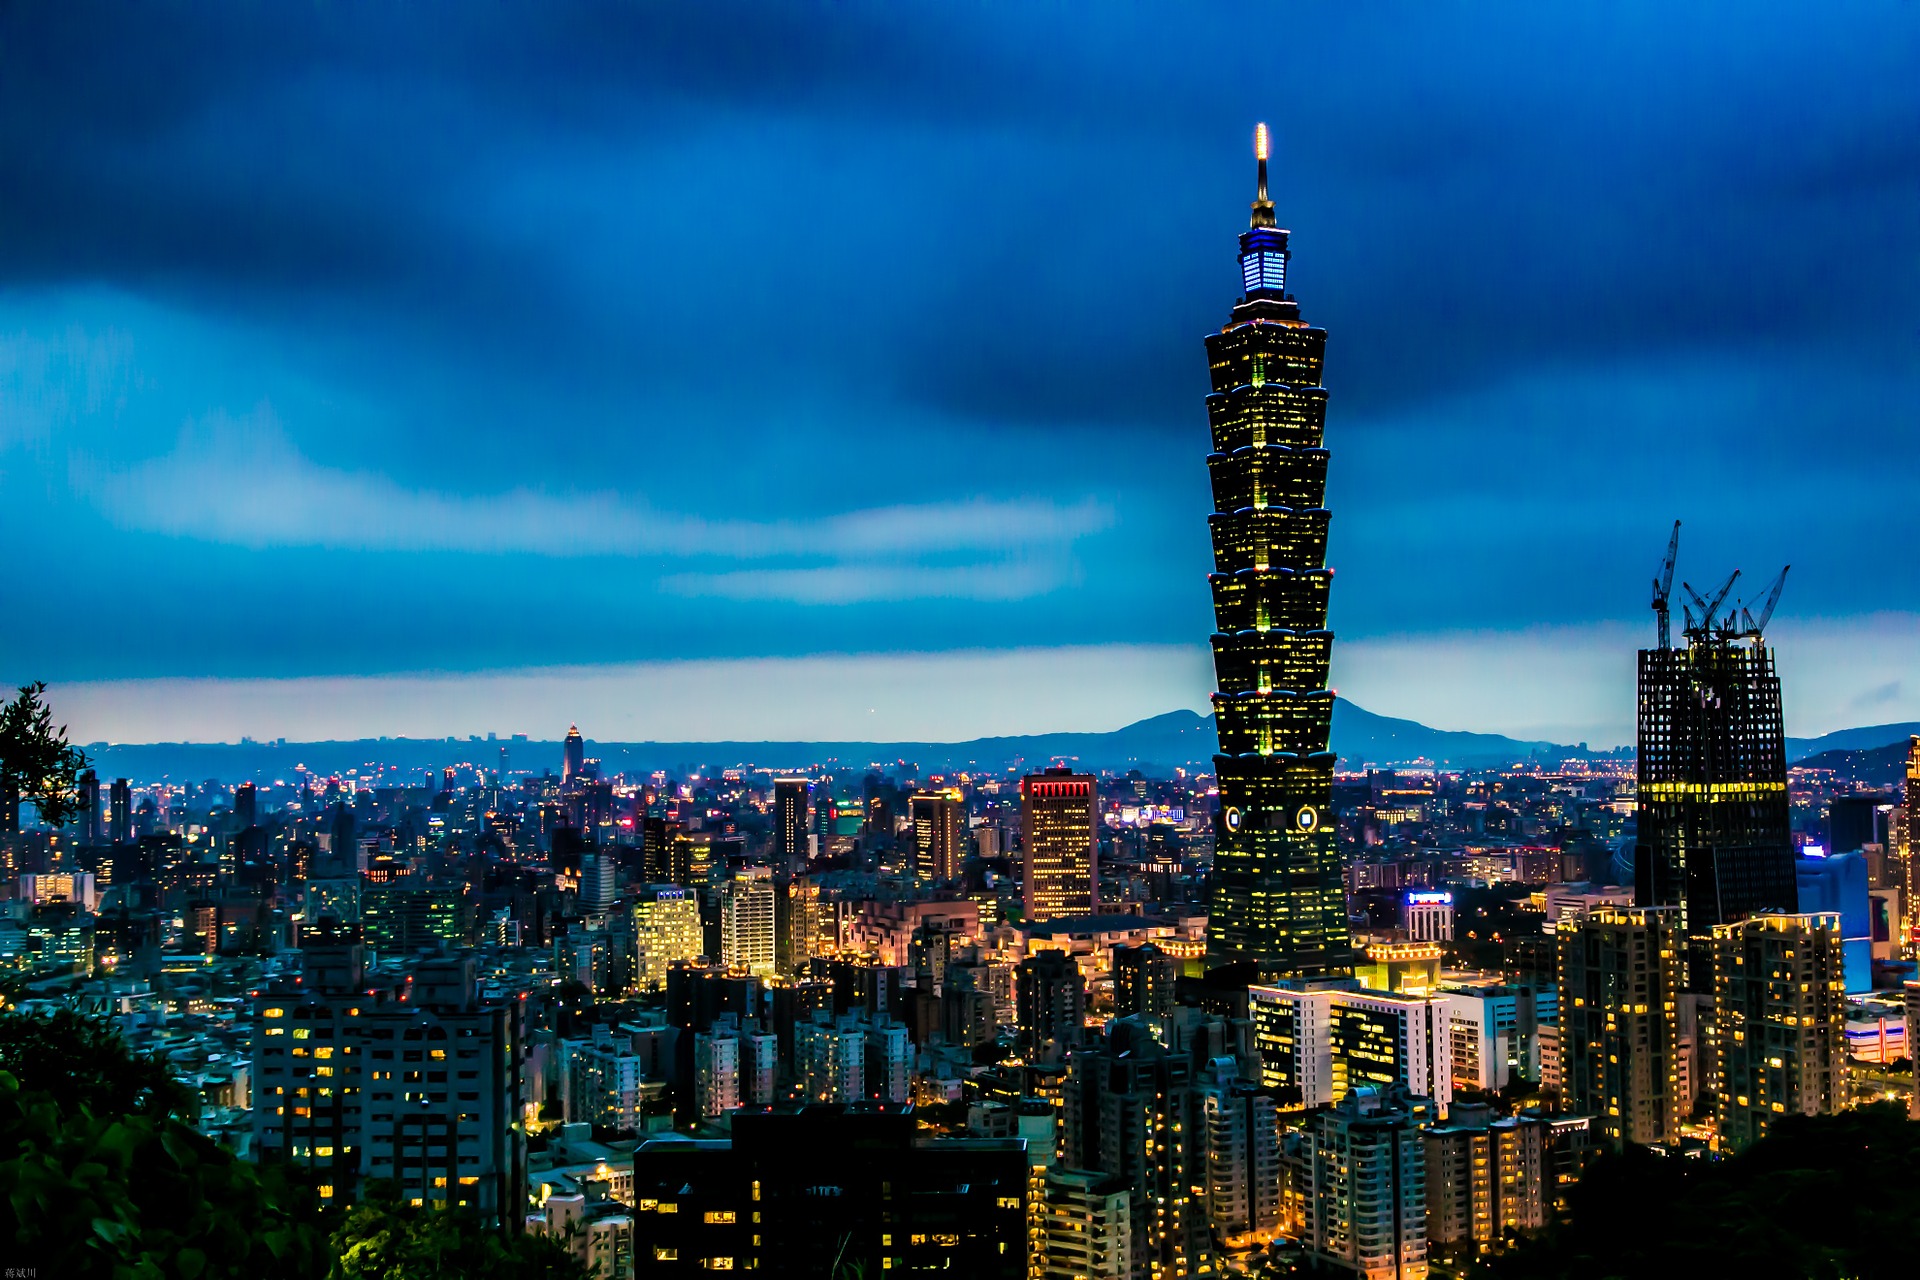 Night view of Taipei 101